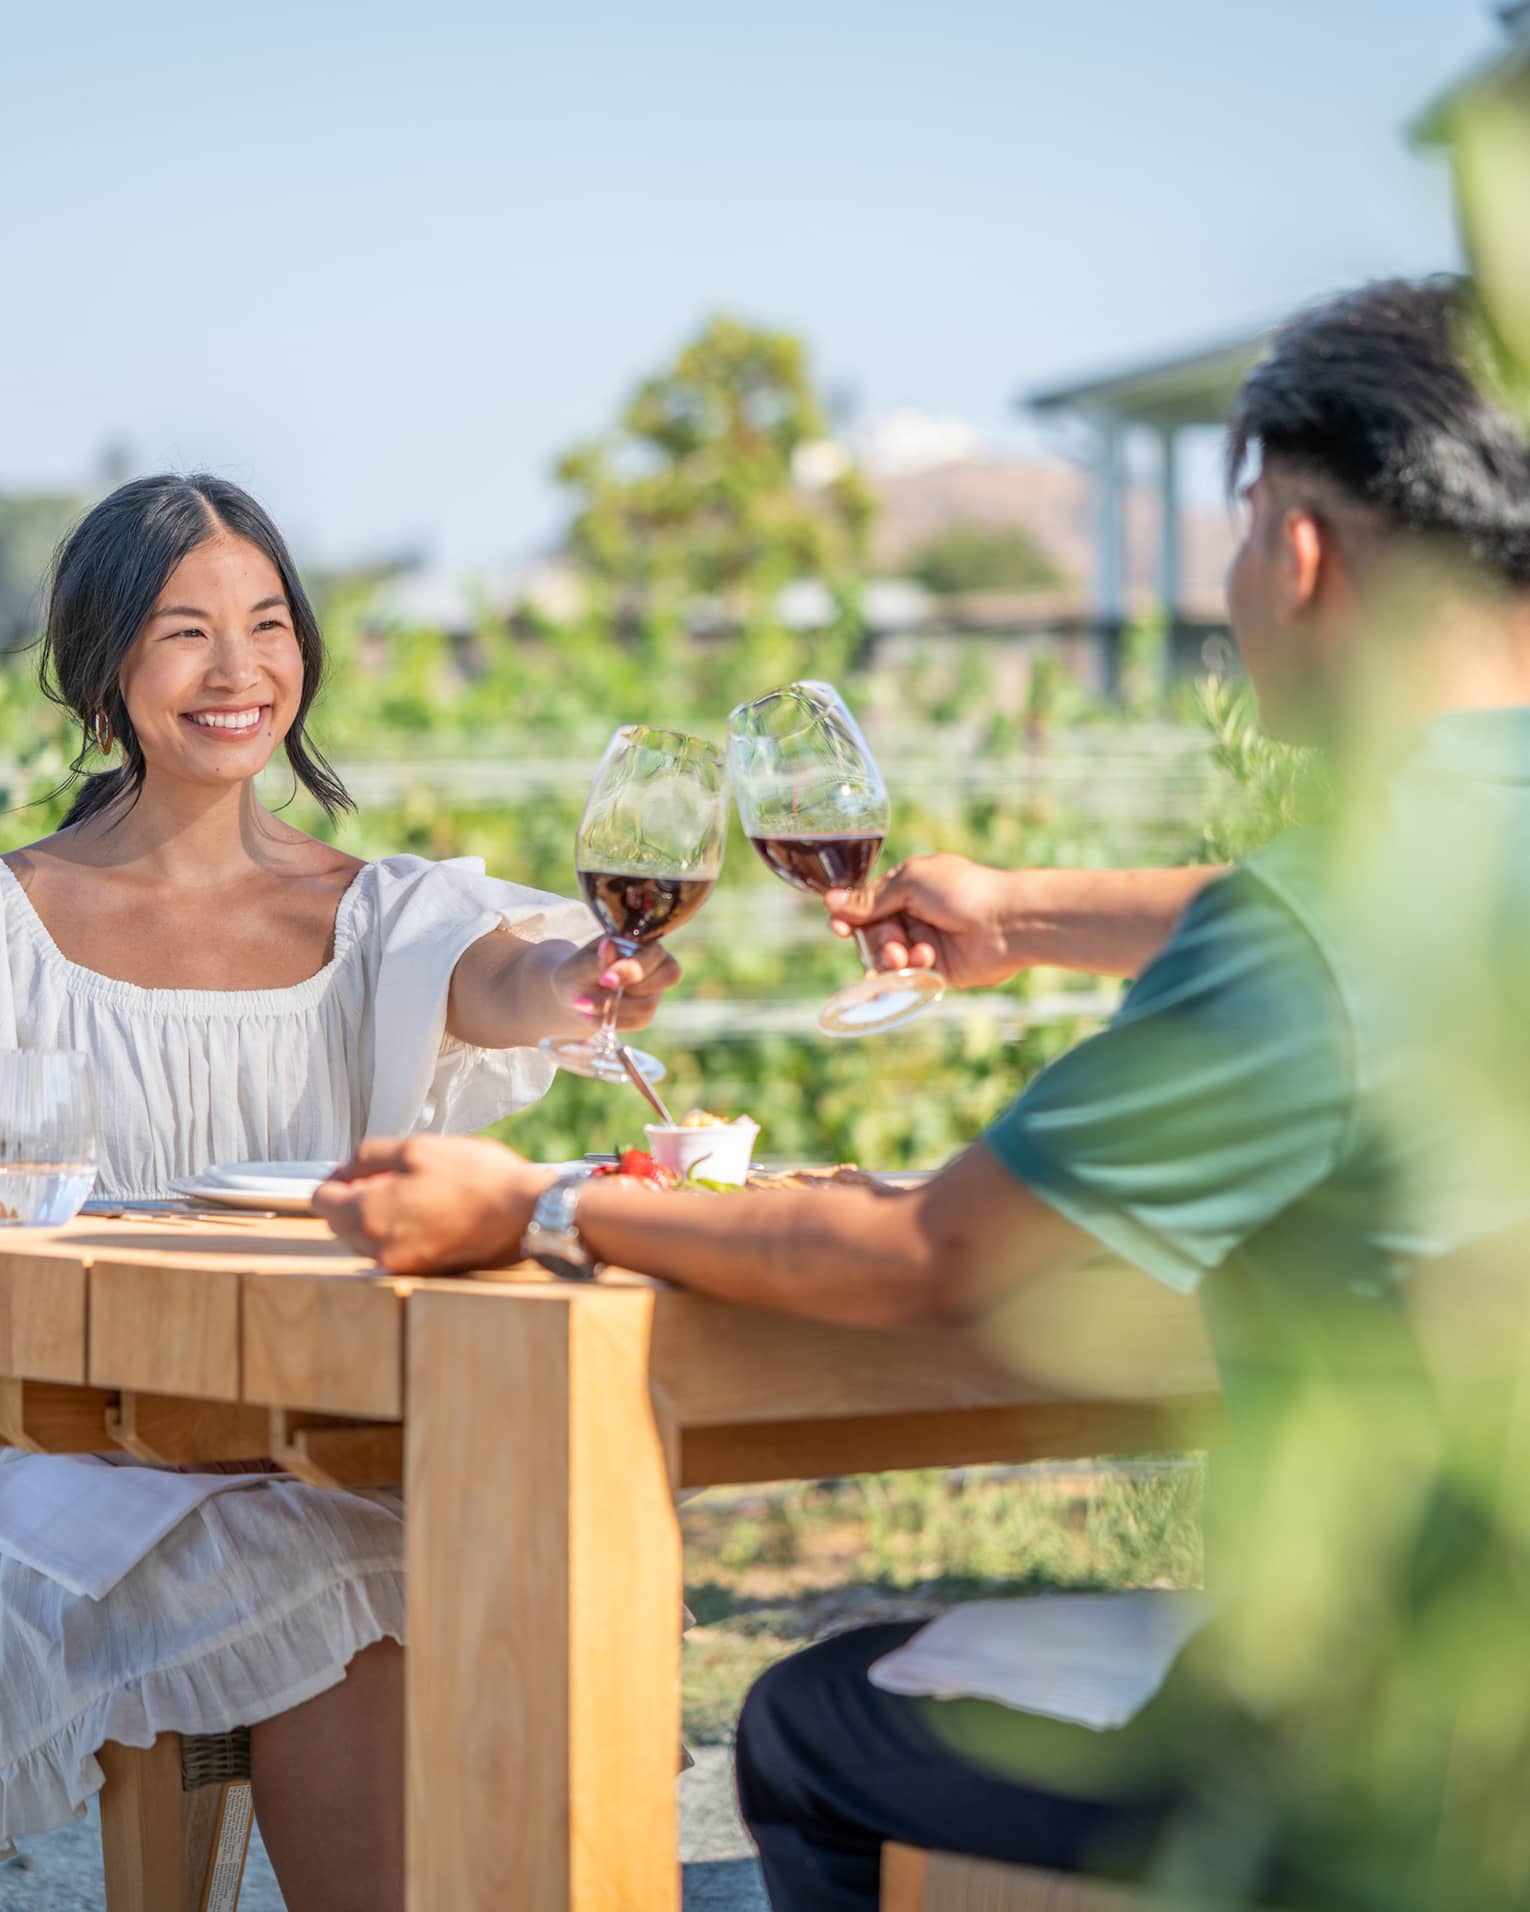 A man and woman enjoying wine outside.